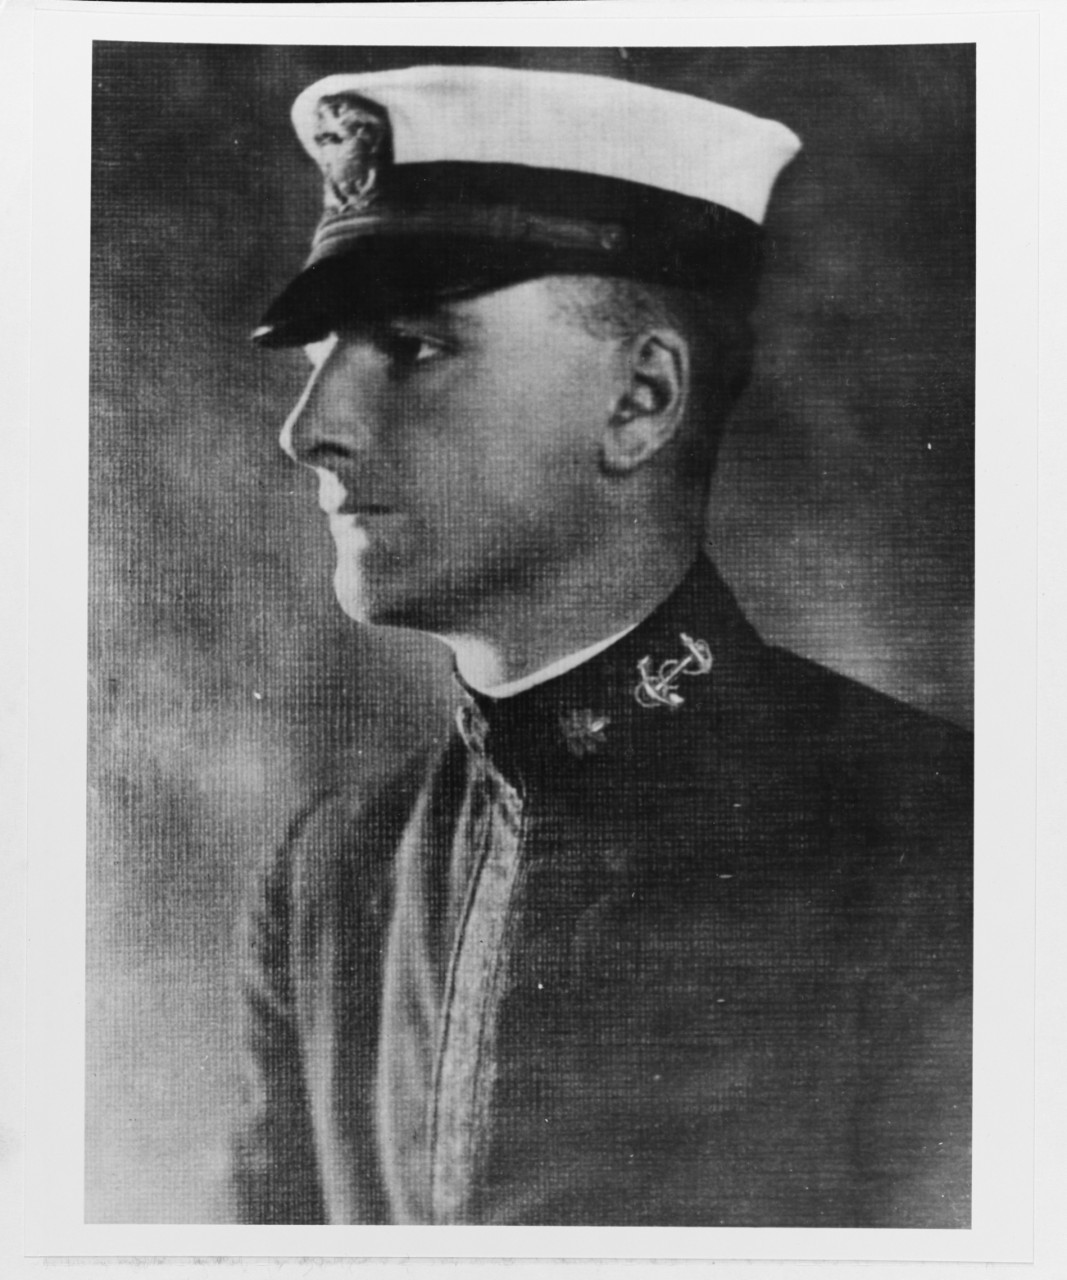 Lieutenant Commander Frank L. Muller, USN Reserve Force